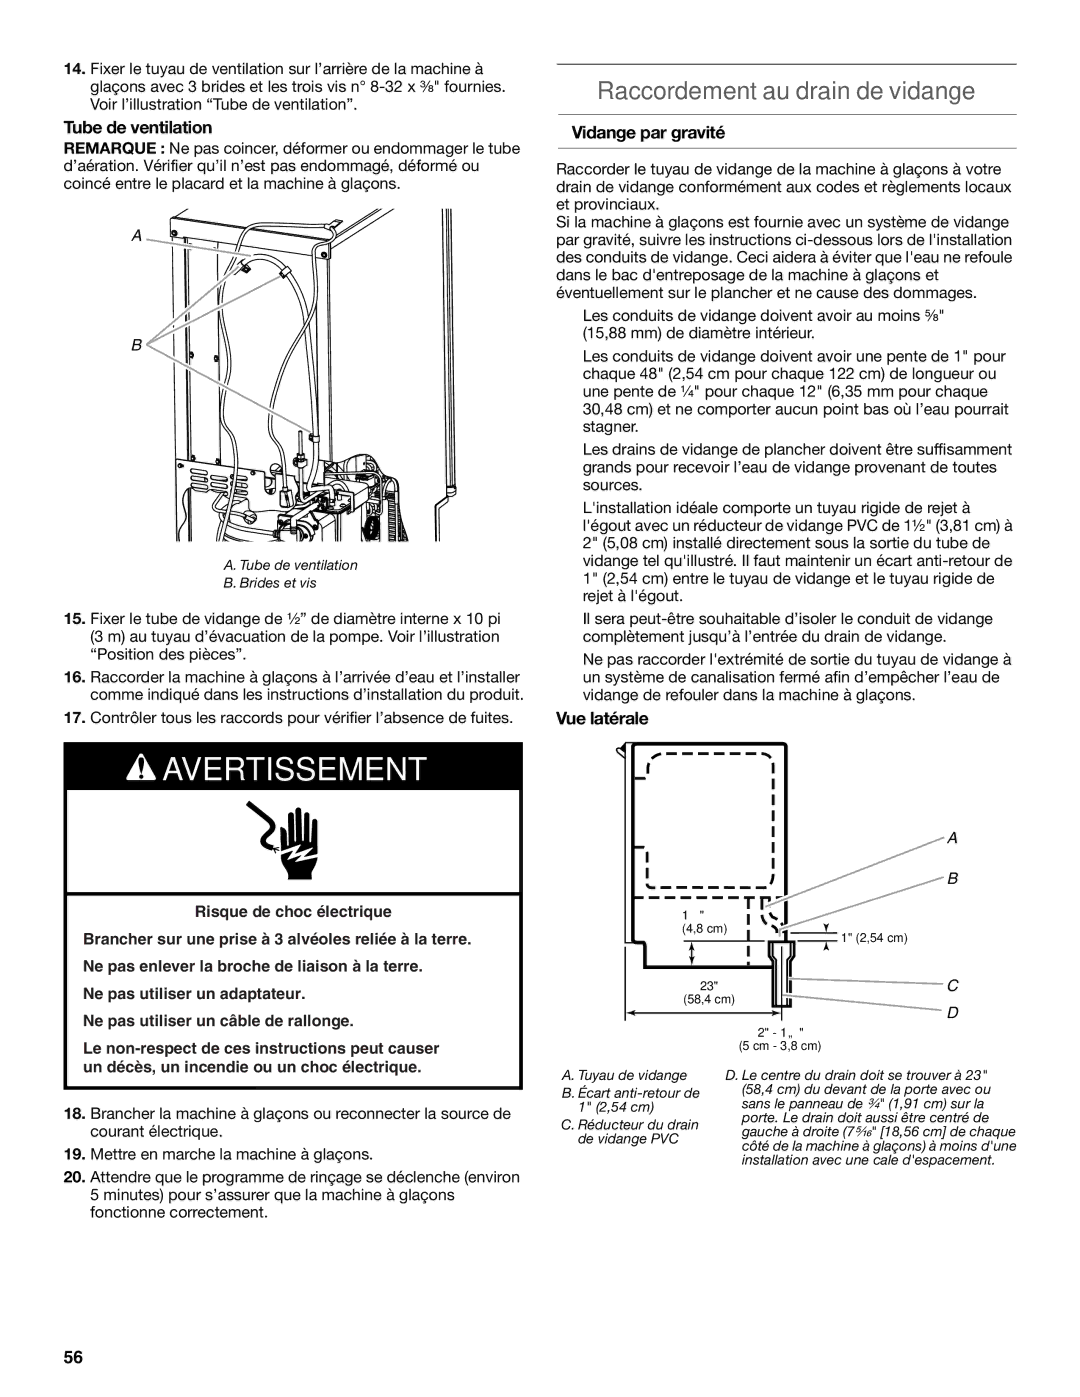 KitchenAid W10520792B manual Raccordement au drain de vidange, Tube de ventilation, Vidange par gravité, Vue latérale 